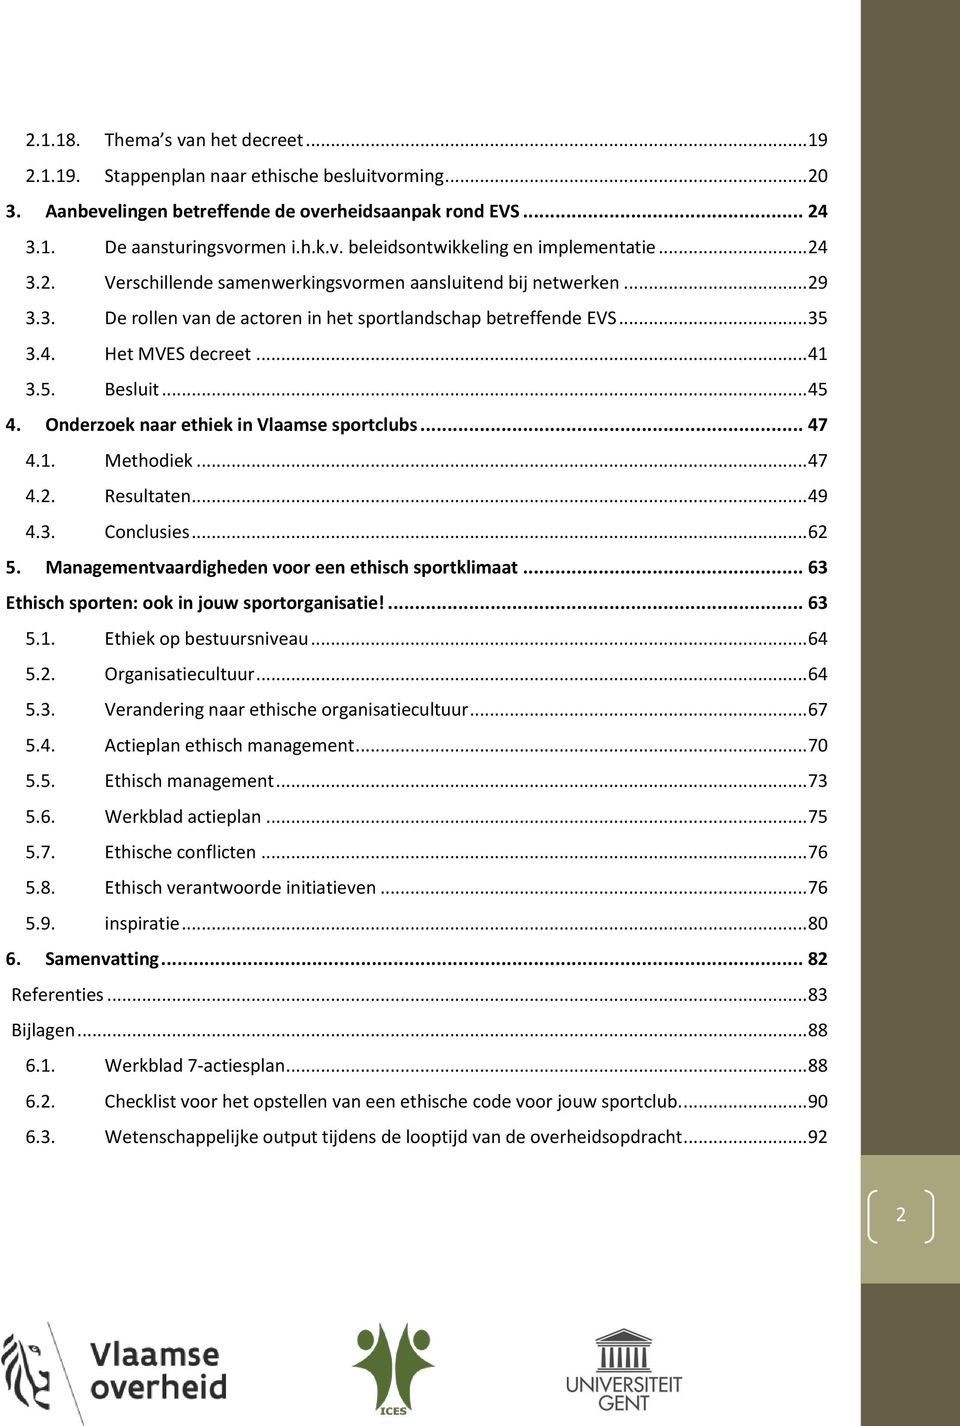 Onderzoek naar ethiek in Vlaamse sportclubs... 47 4.1. Methodiek... 47 4.2. Resultaten... 49 4.3. Conclusies... 62 5. Managementvaardigheden voor een ethisch sportklimaat.